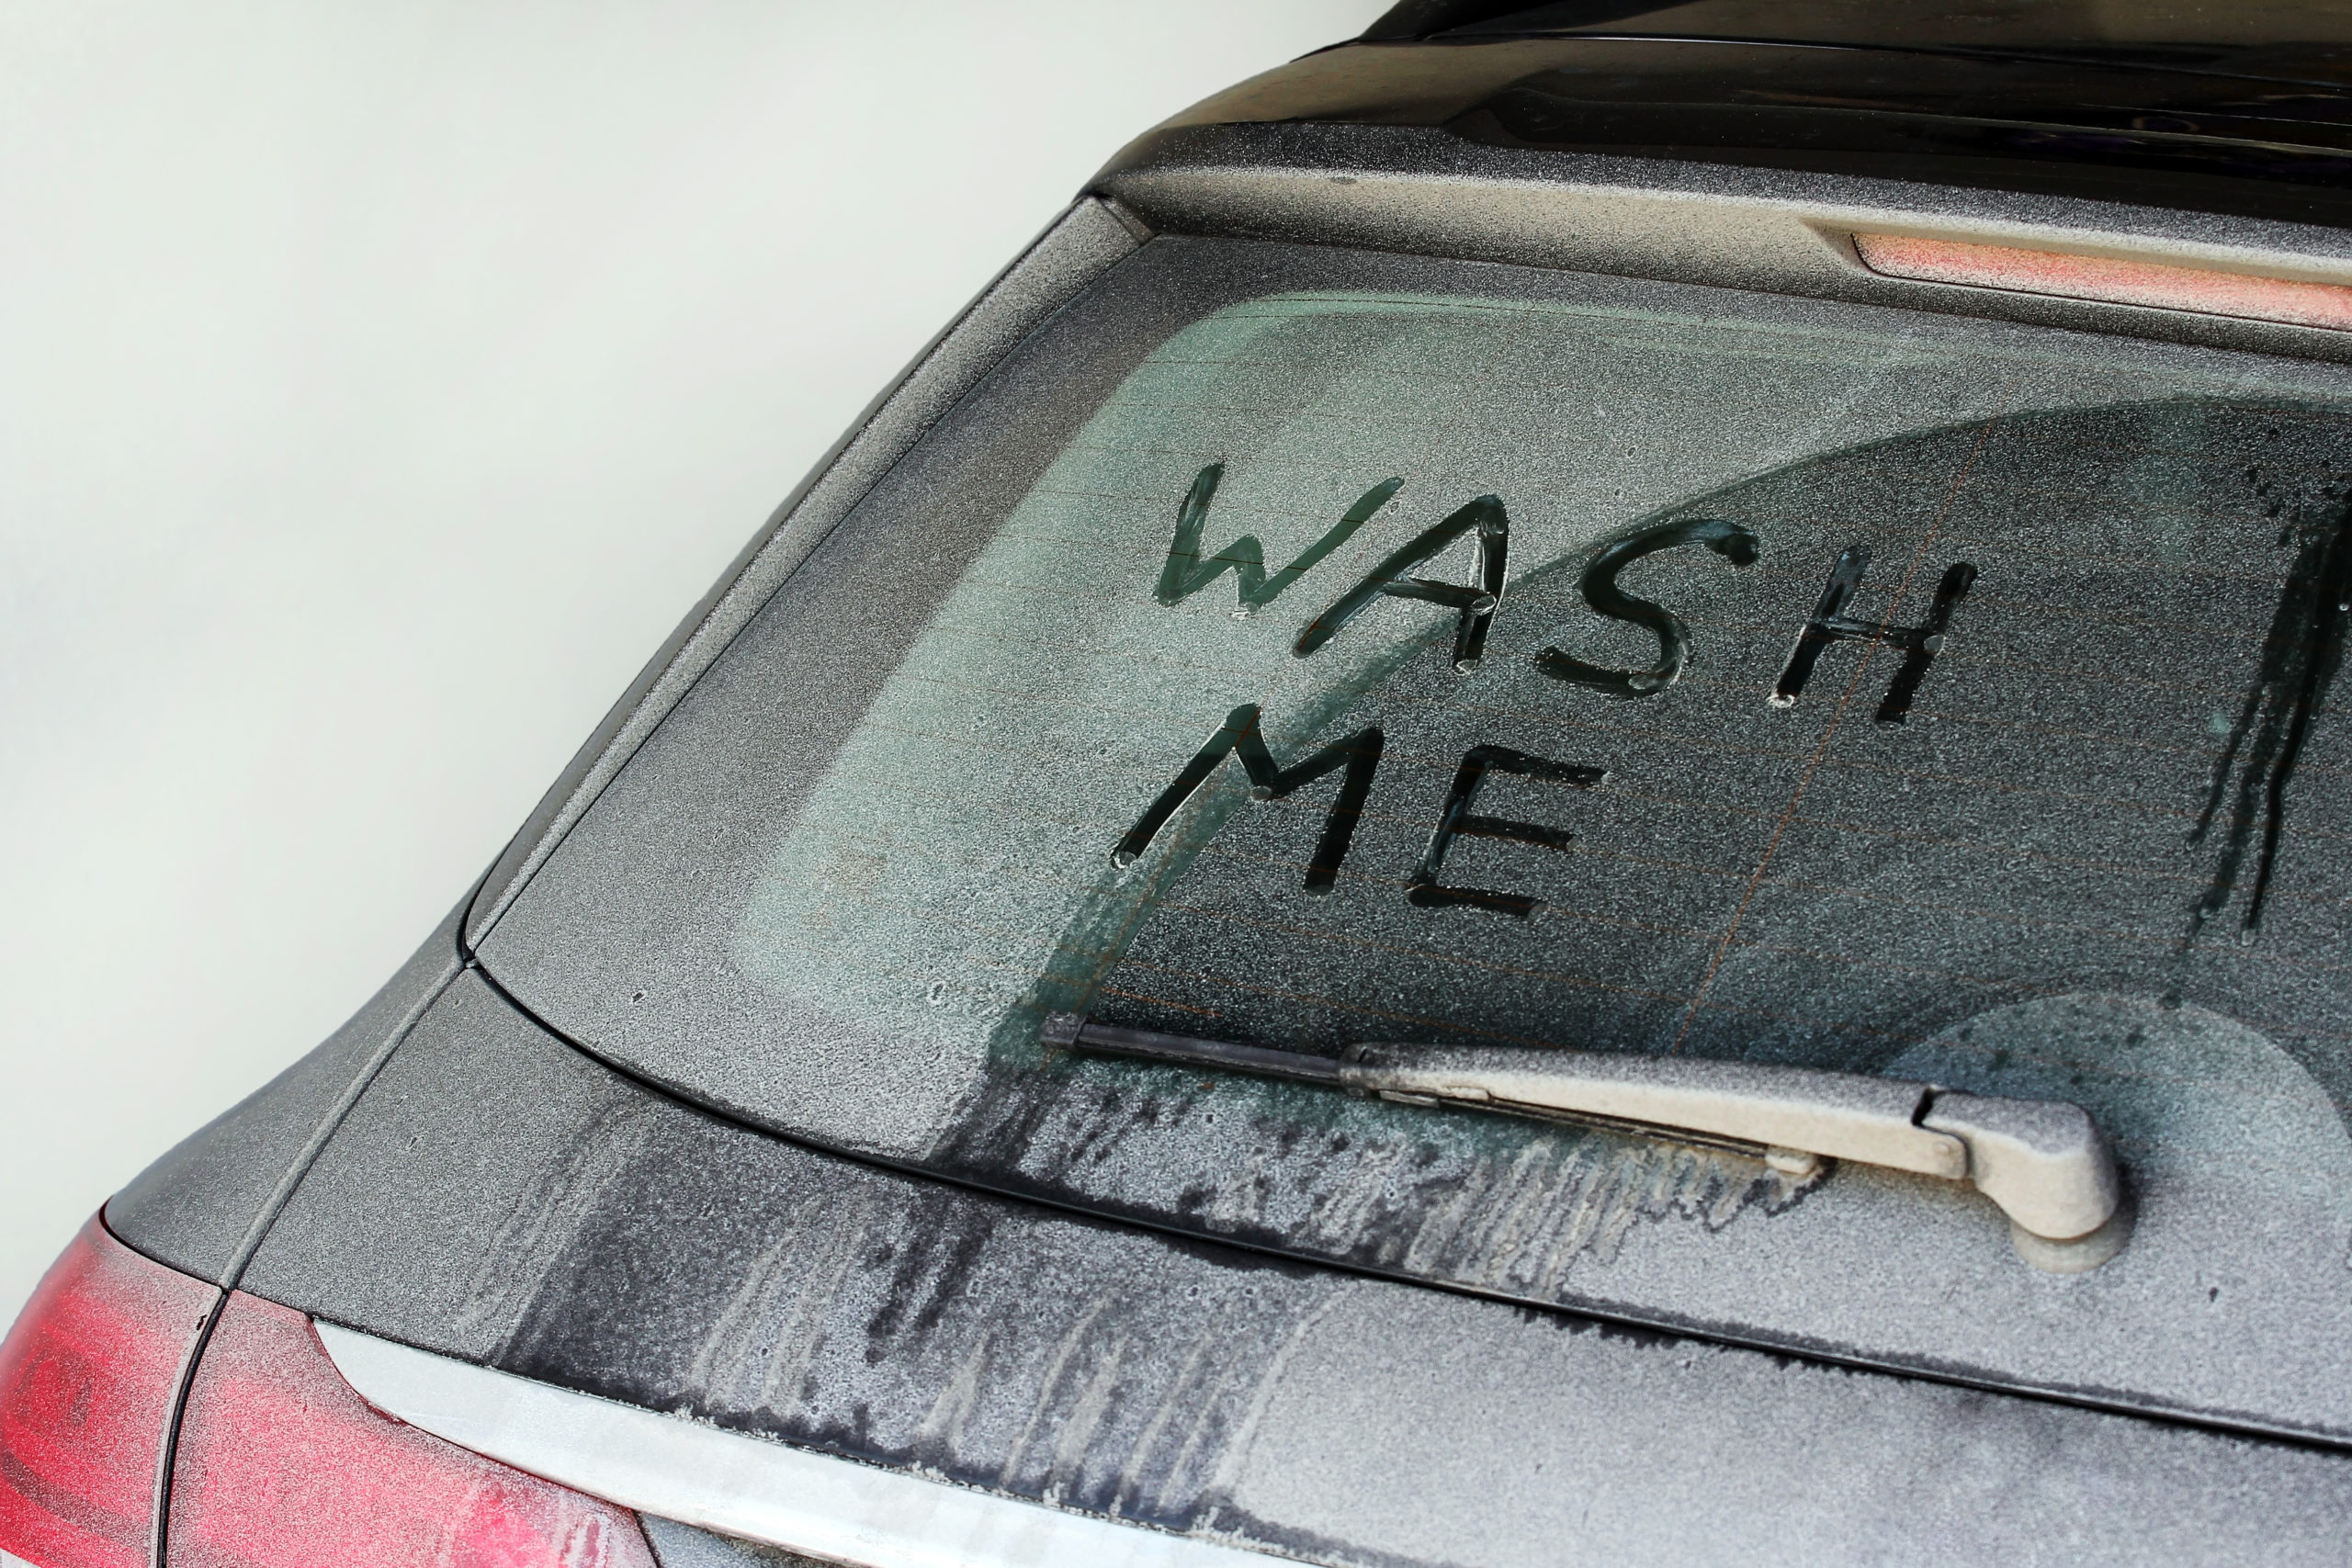 'Ei, me lave': motoristas podem ser multados por deixar o carro sujo?